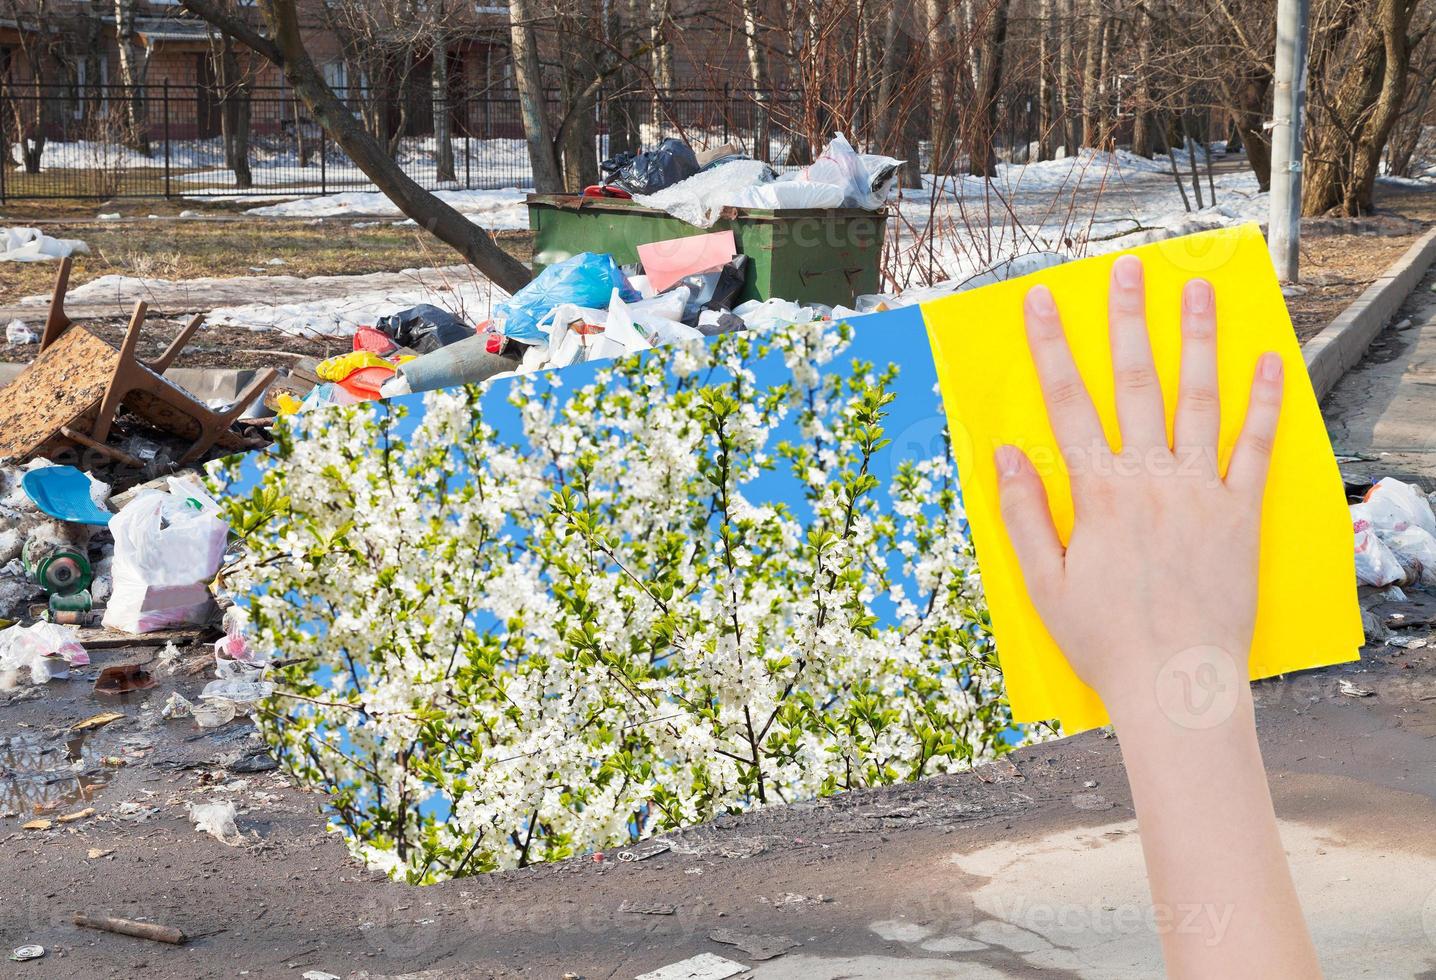 la main supprime les déchets urbains par un chiffon jaune photo